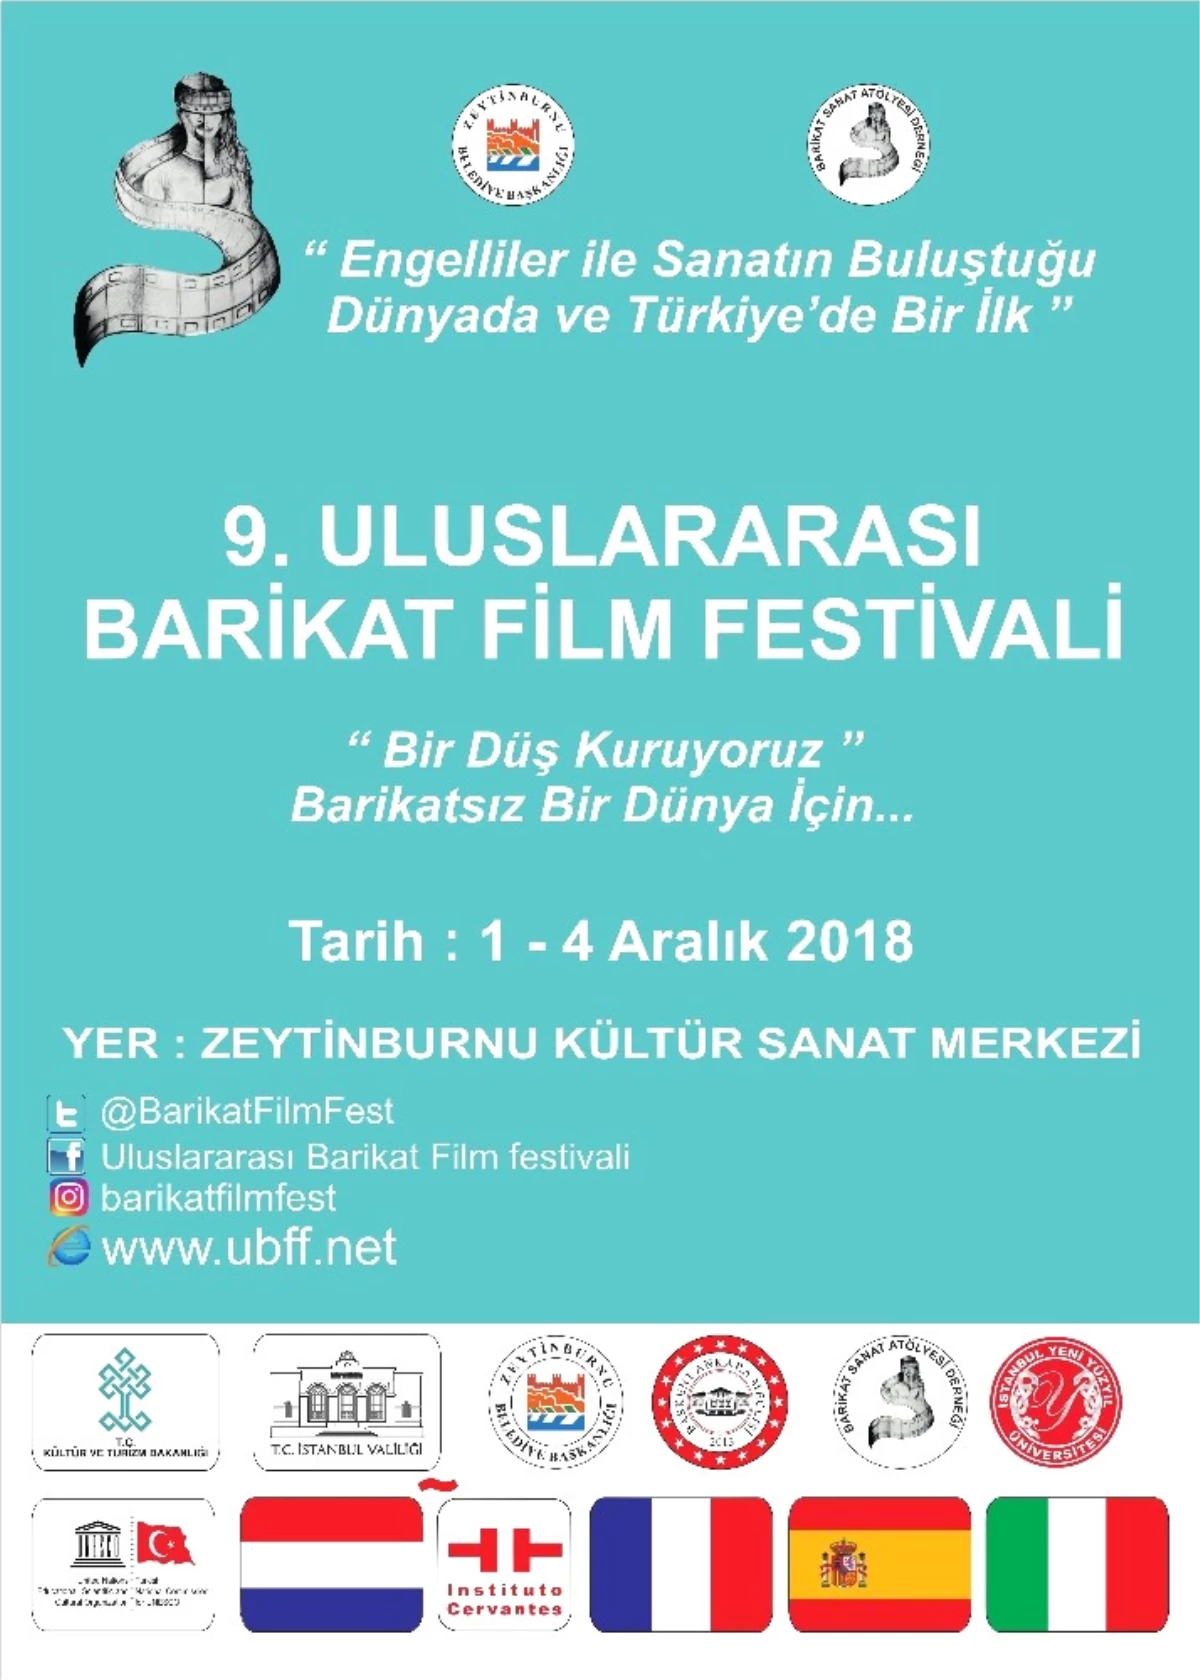 9. Uluslararası Barikat Film Festivali